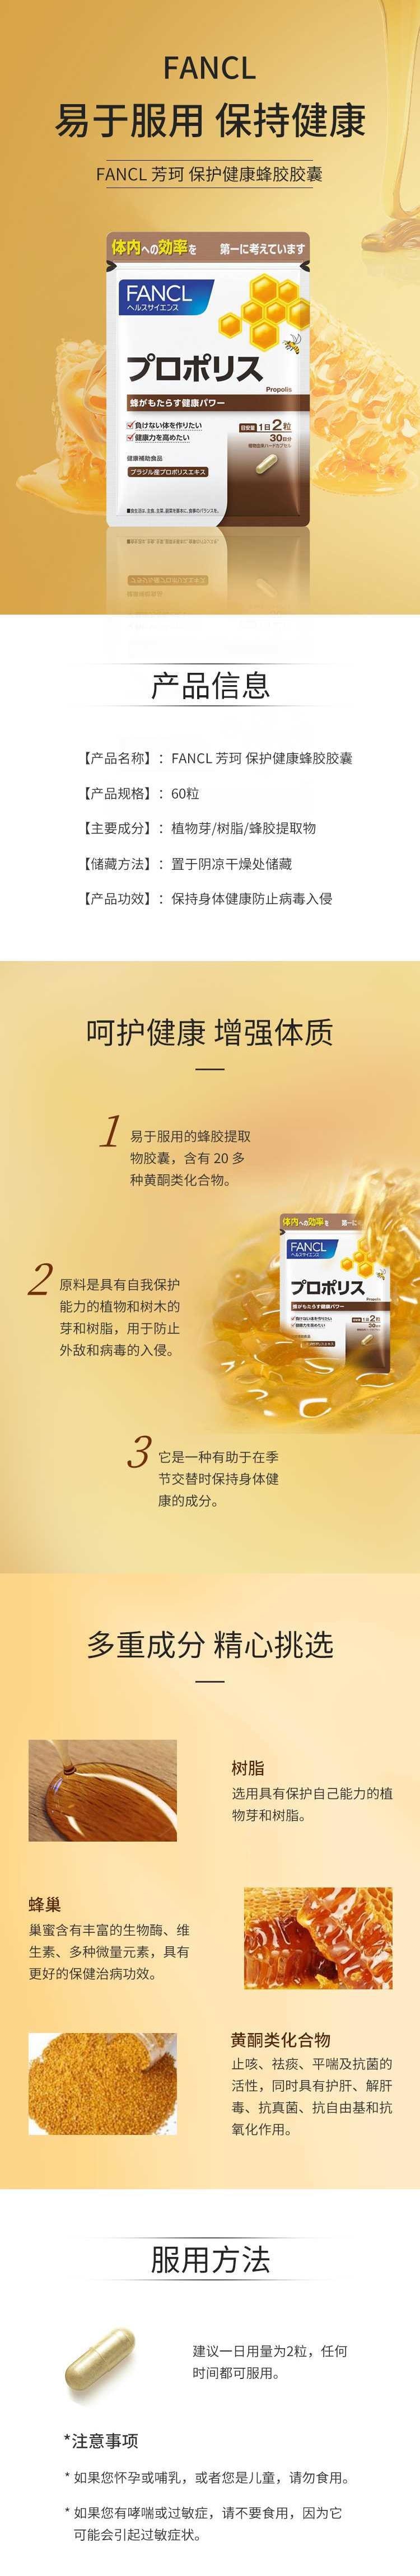 【日本直邮】FANCL芳珂 膳食营养补充食品蜂胶胶囊 60粒/30天量